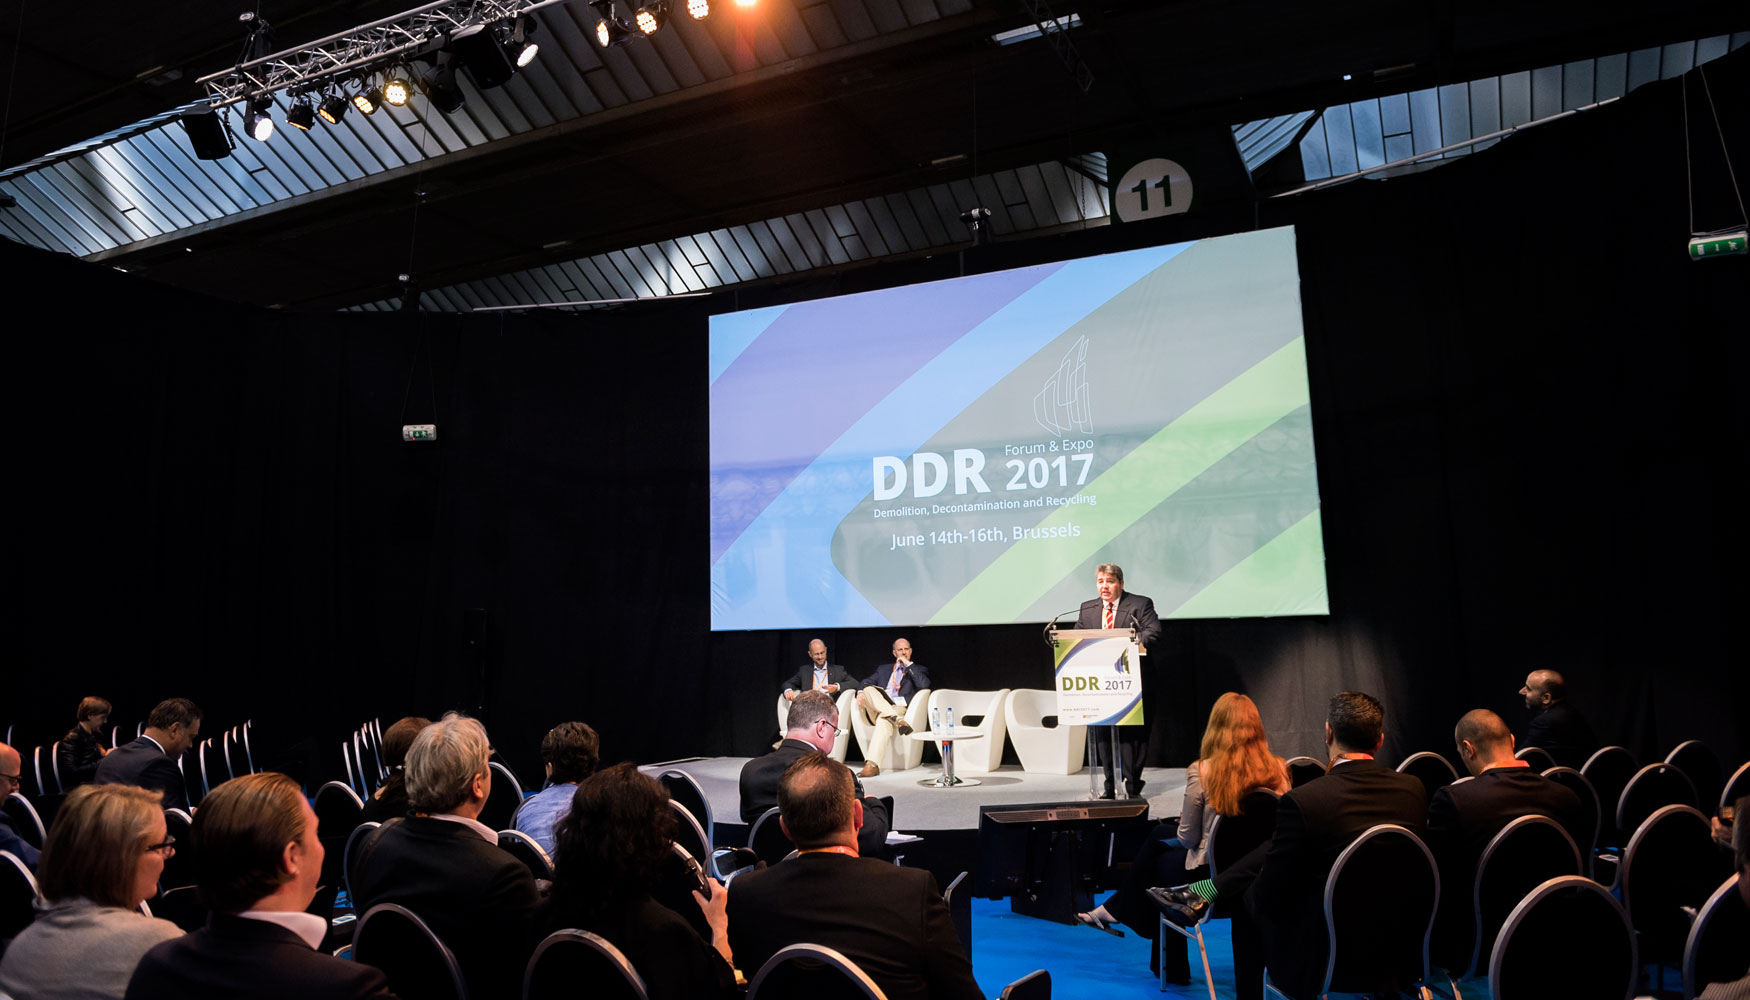 Acto de apertura del DDR Forum & Expo 2017